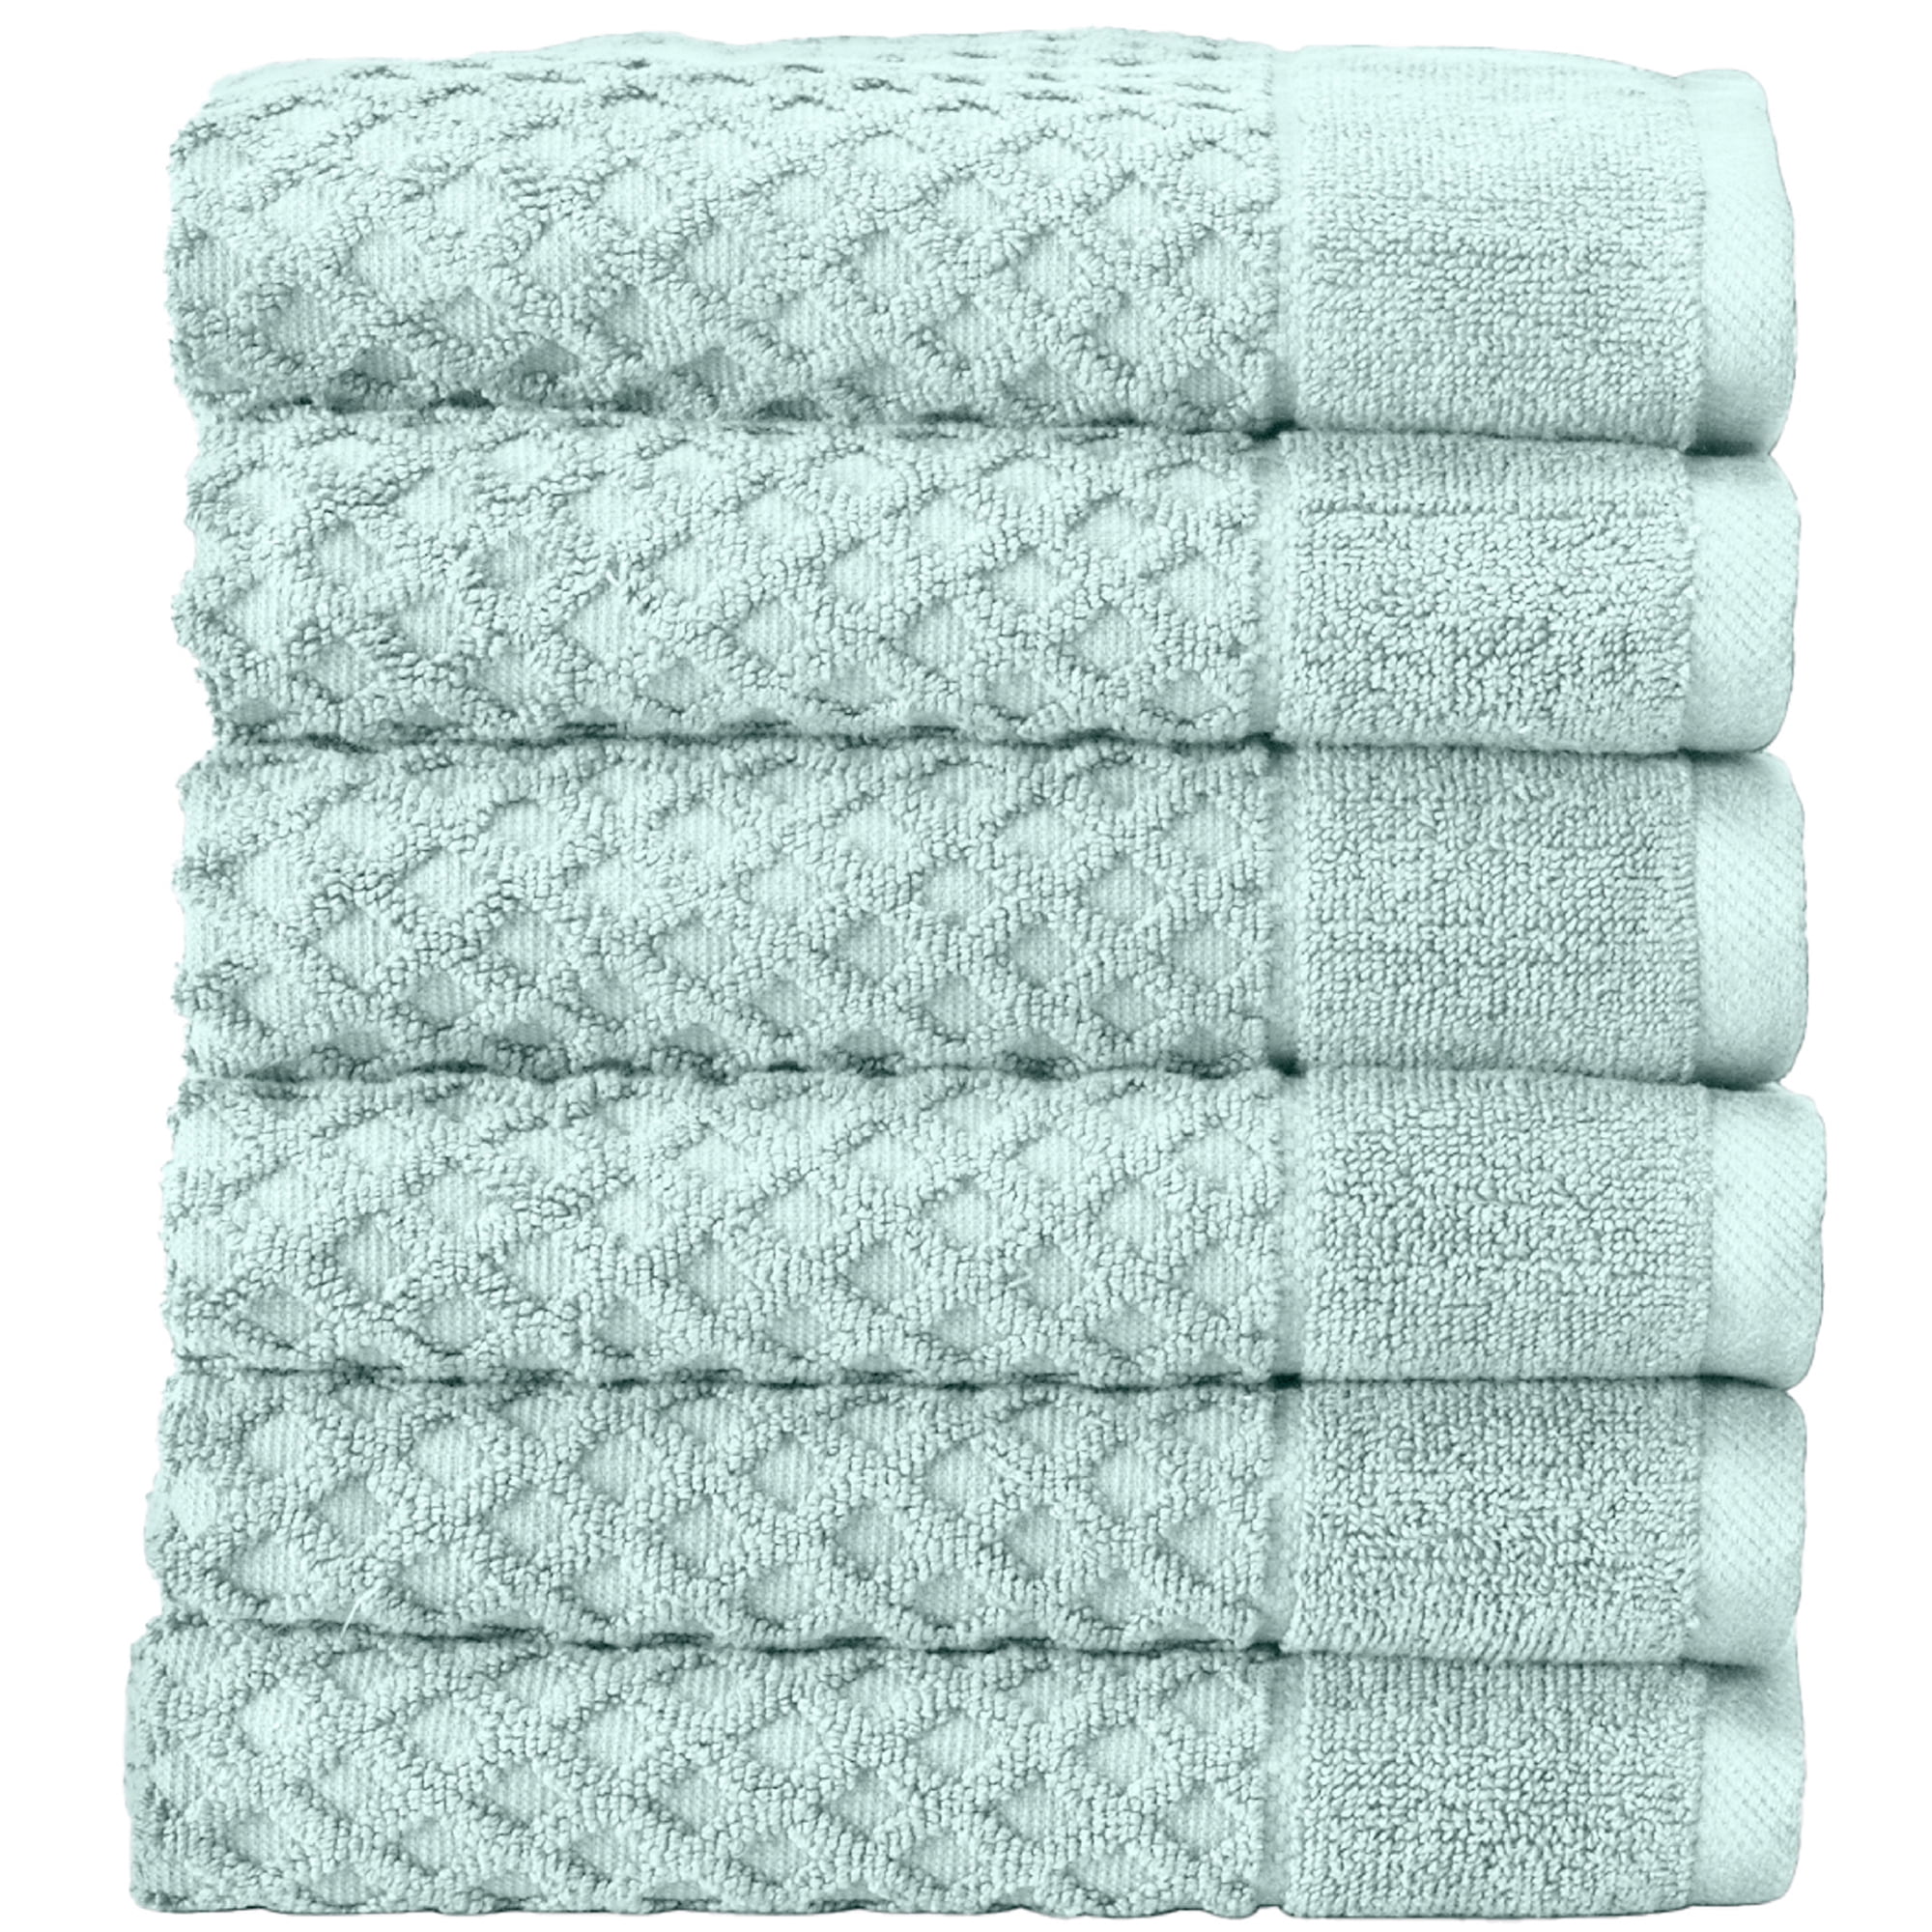 2 Pack Cotton Stripe Bath Towel - Noelle Collection